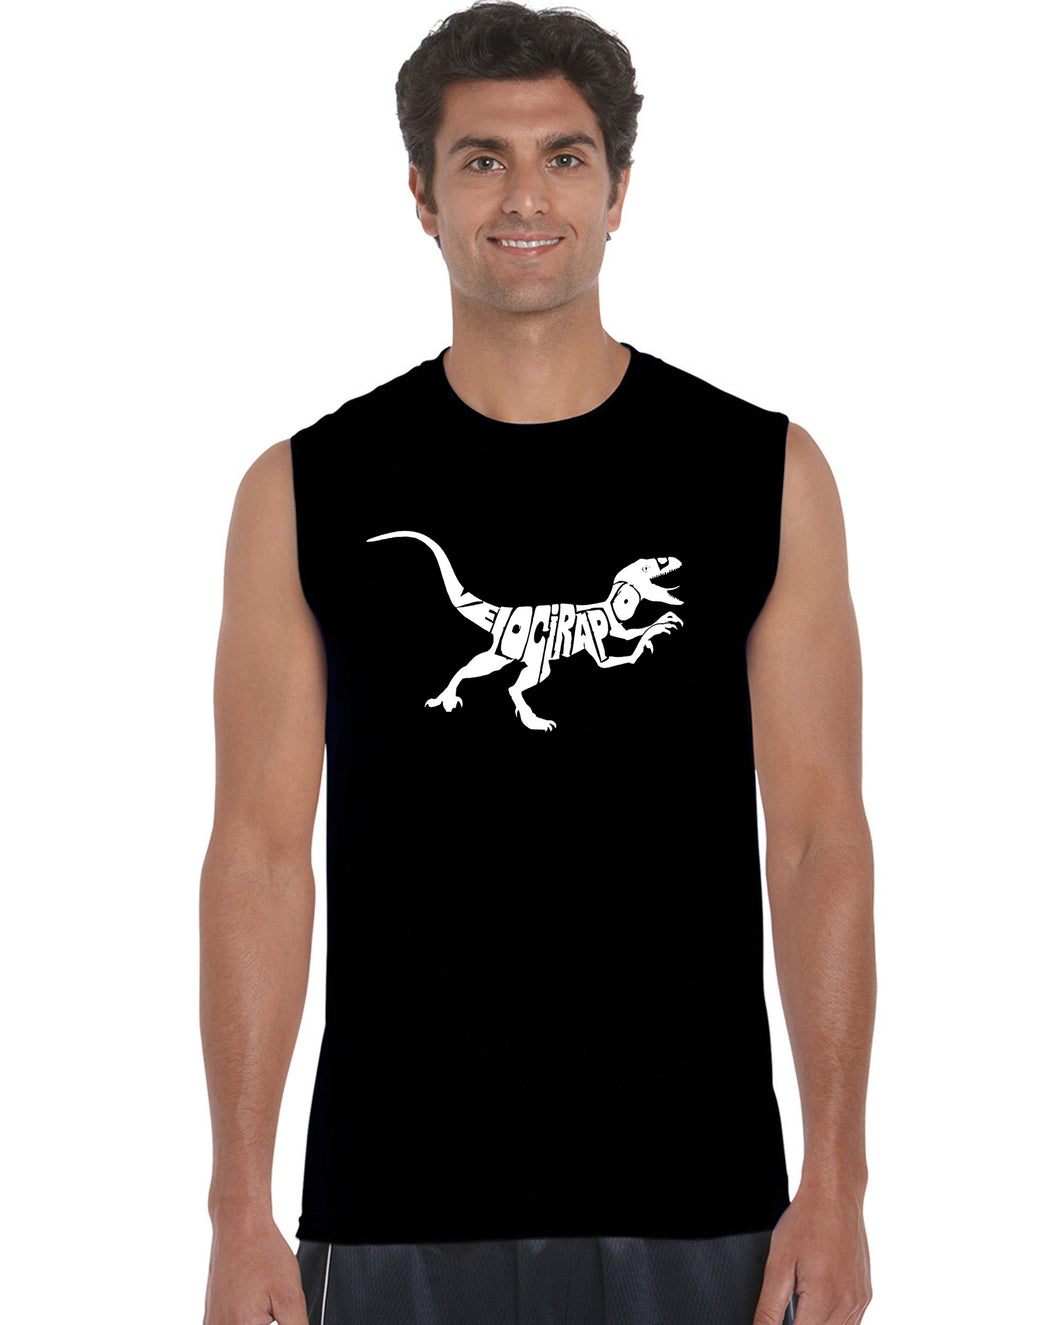 Velociraptor - Men's Word Art Sleeveless T-Shirt